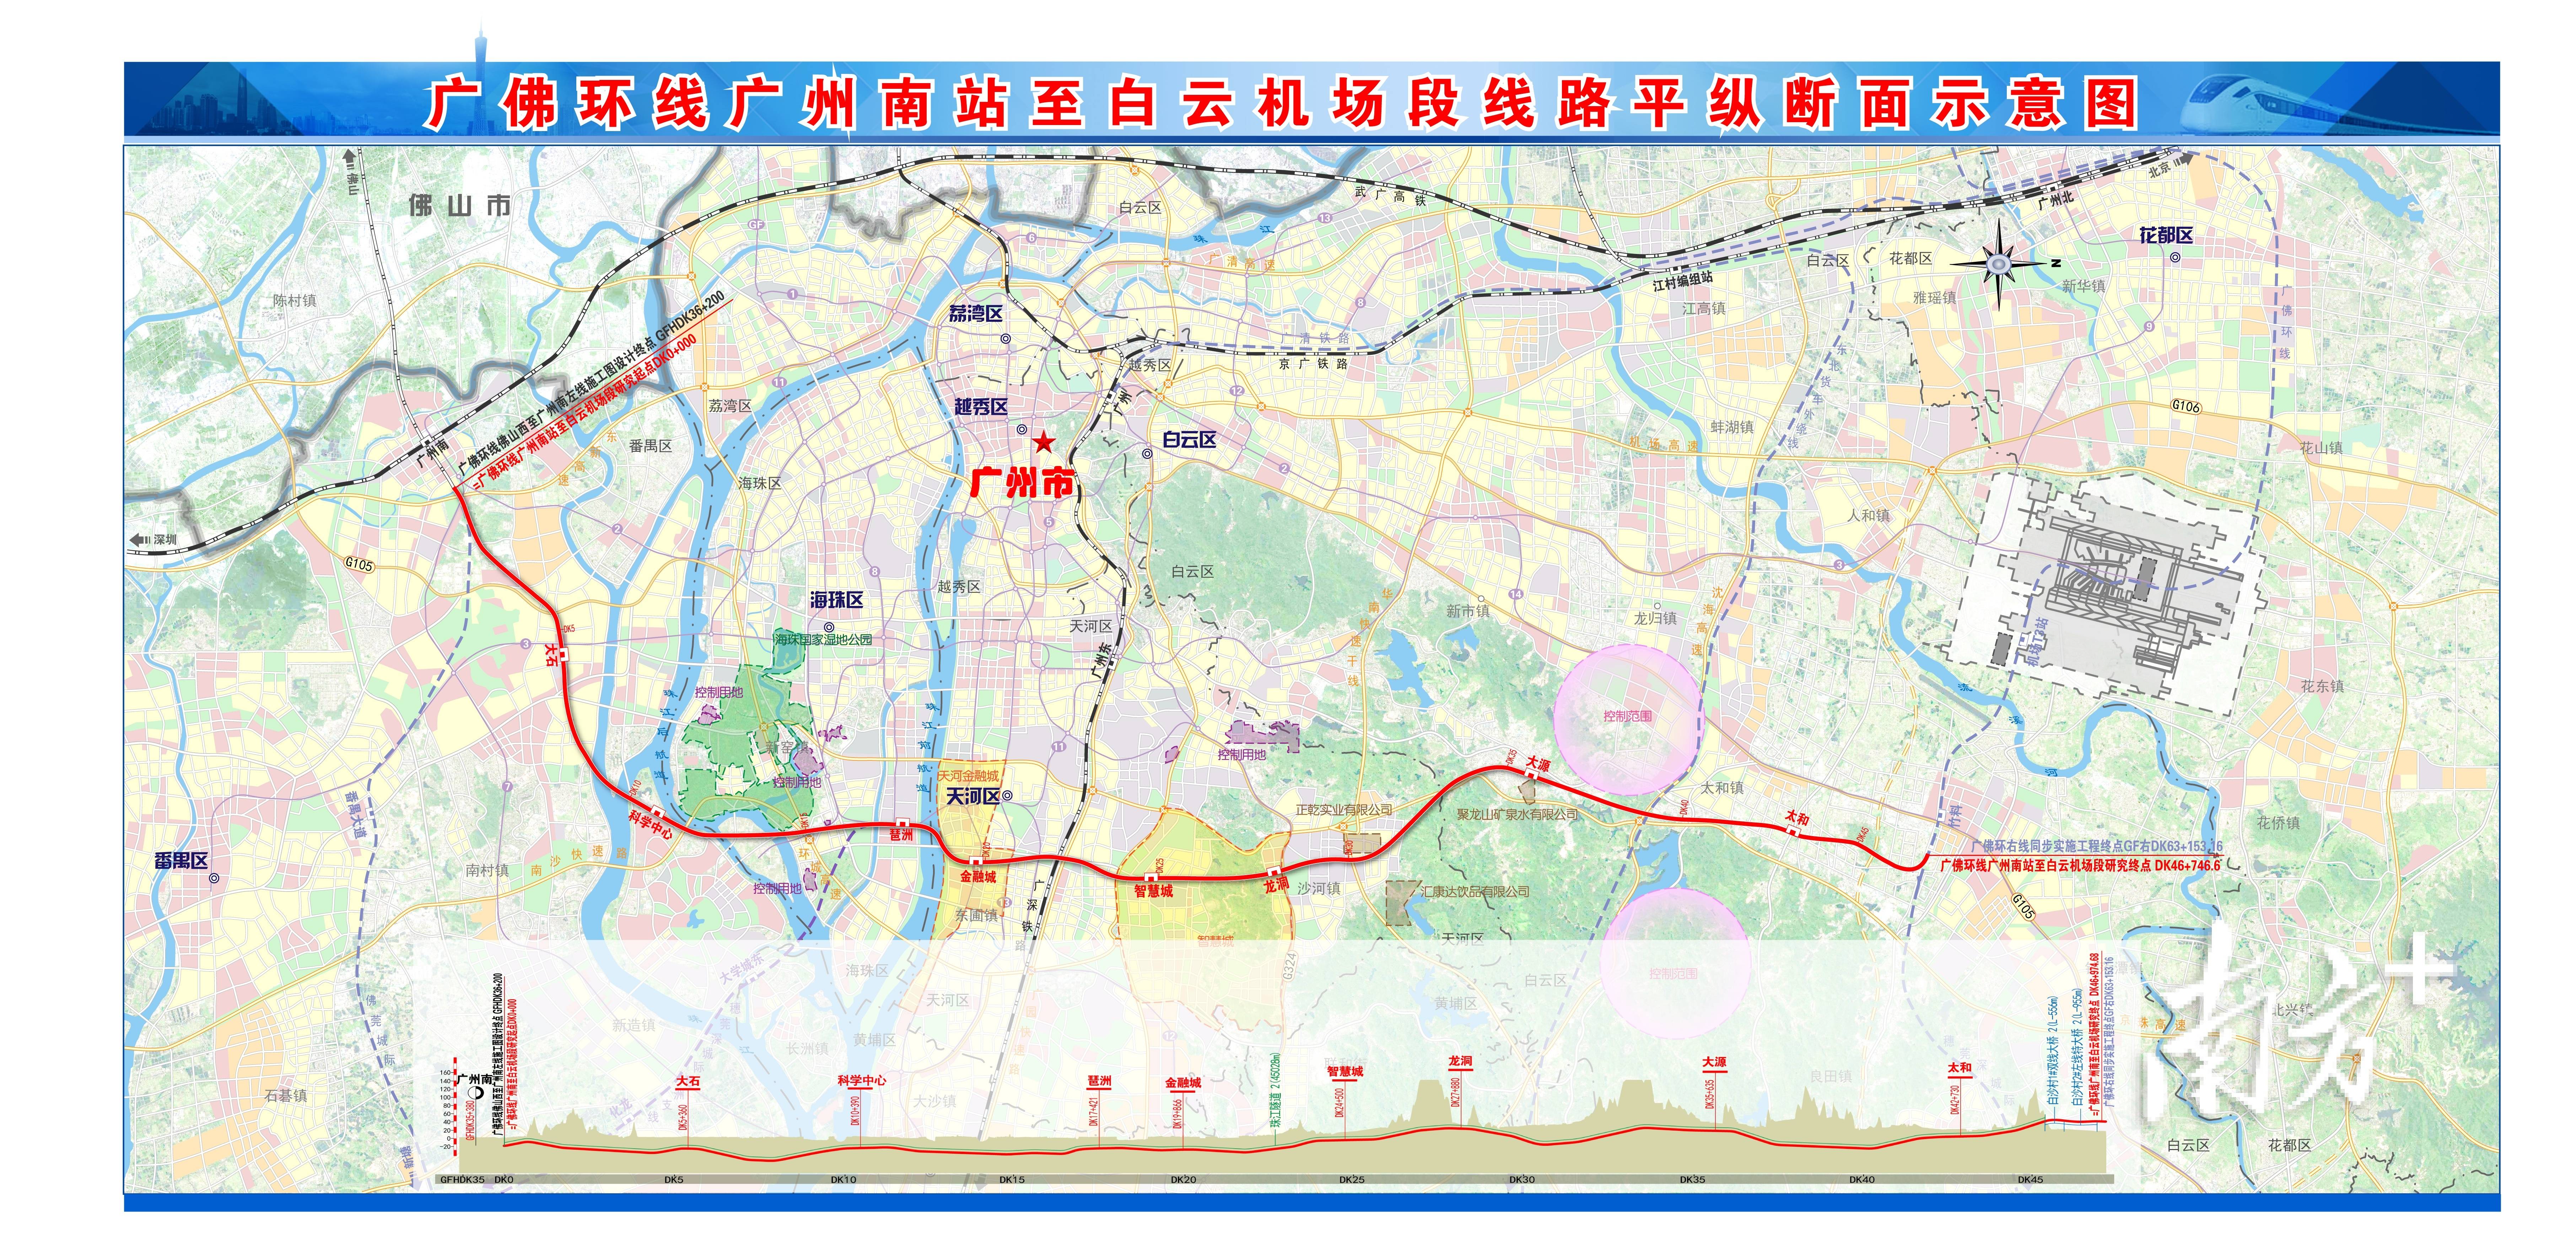 2015年,广州东环城际开工建设,已于2020年率先通车线路全程22